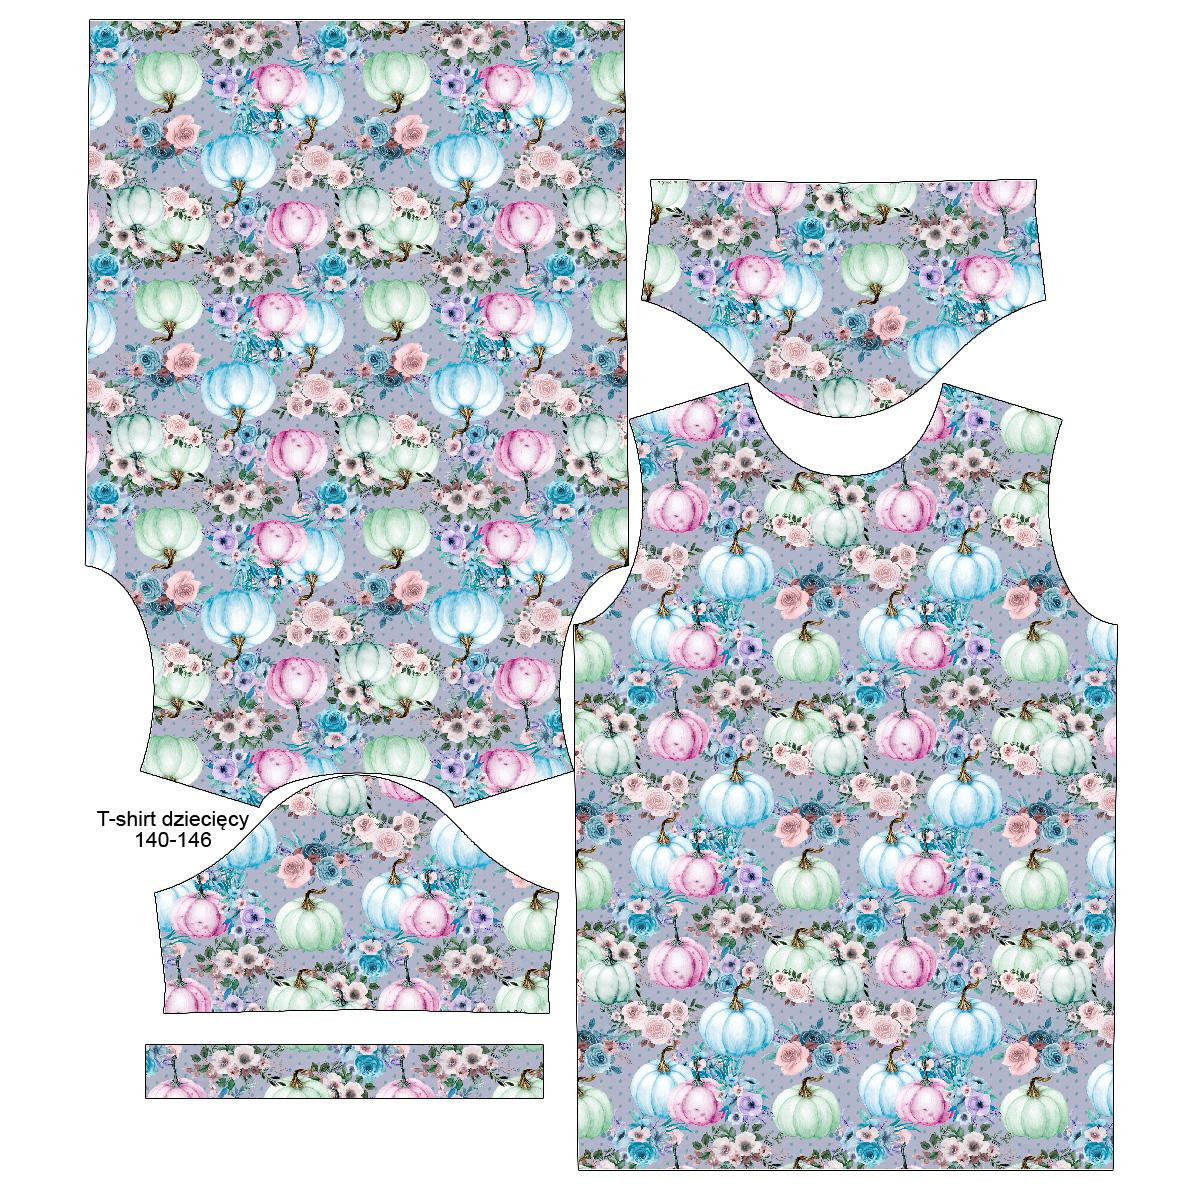 KID’S T-SHIRT - PUMPKINS AND FLOWERS pat. 1 (PUMPKIN GARDEN) - single jersey 